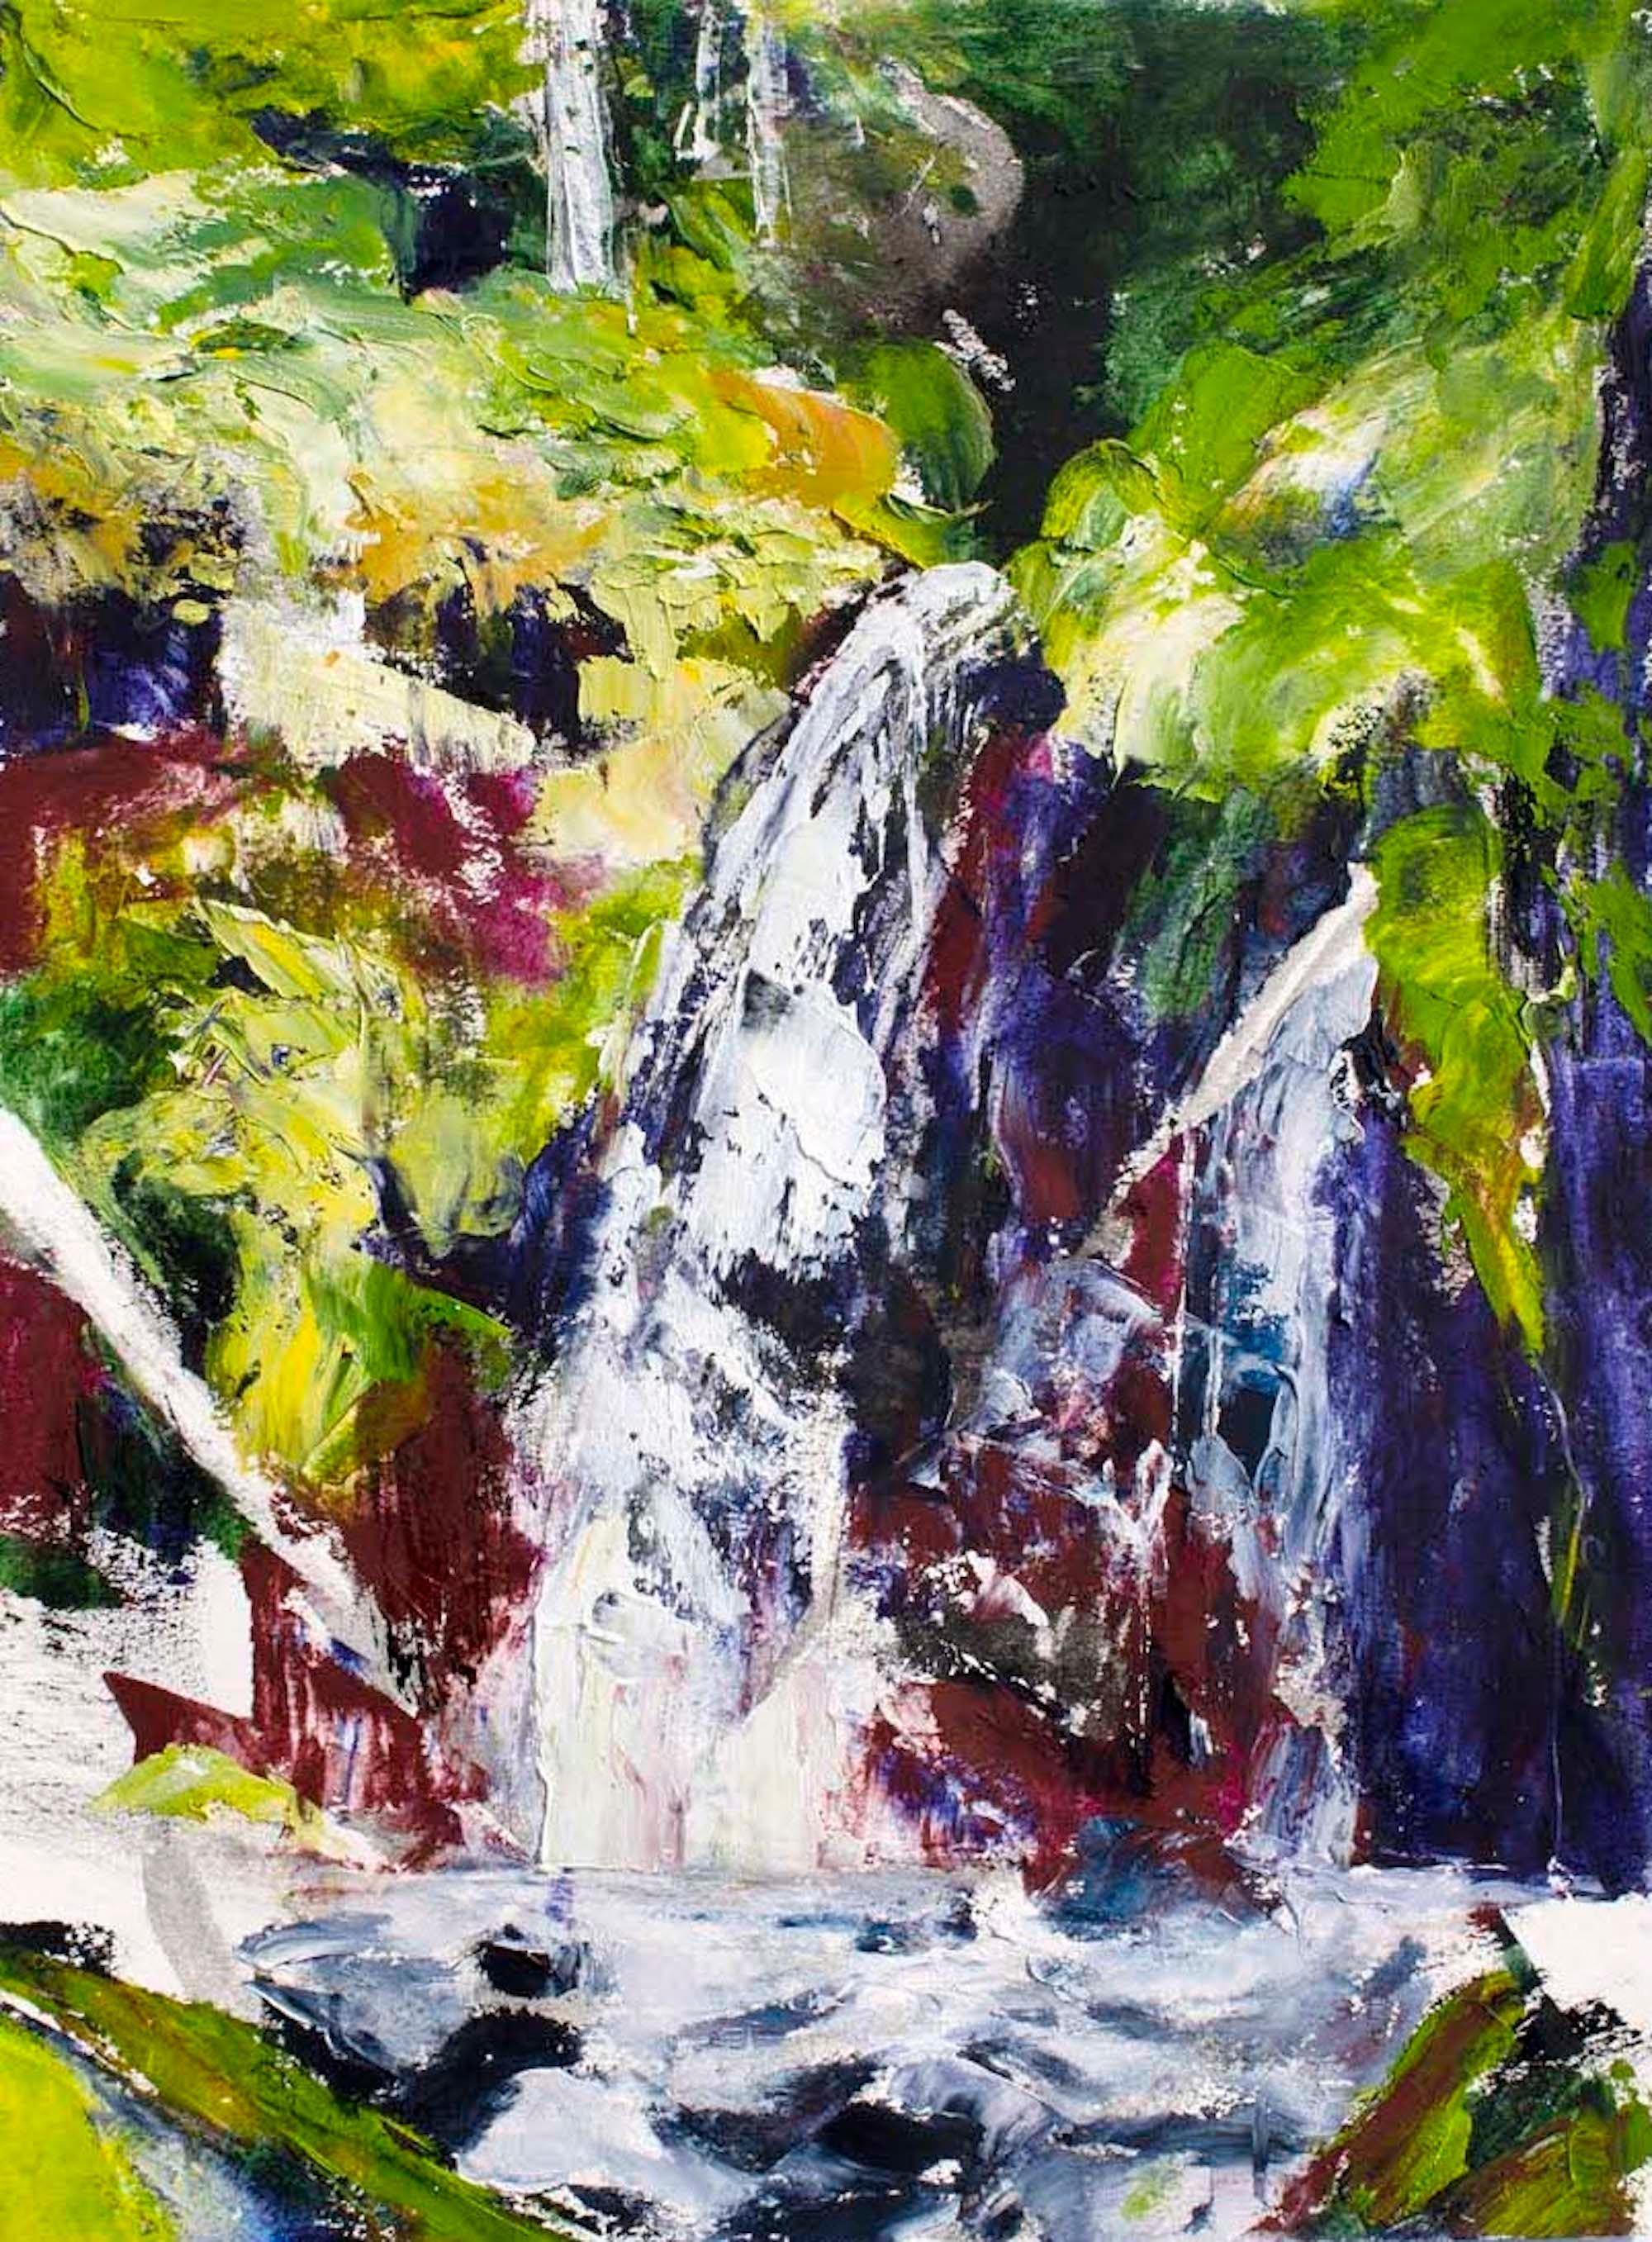 <p>Kommentare des Künstlers<br>Die Künstlerin Tiffany Blaise zeigt eine expressionistische Ansicht eines dynamischen Wasserfalls. Die rasante Kaskade stürzt in einen erfrischenden Regenwaldbach, der in leuchtenden Farben gemalt ist. Die Natur fließt